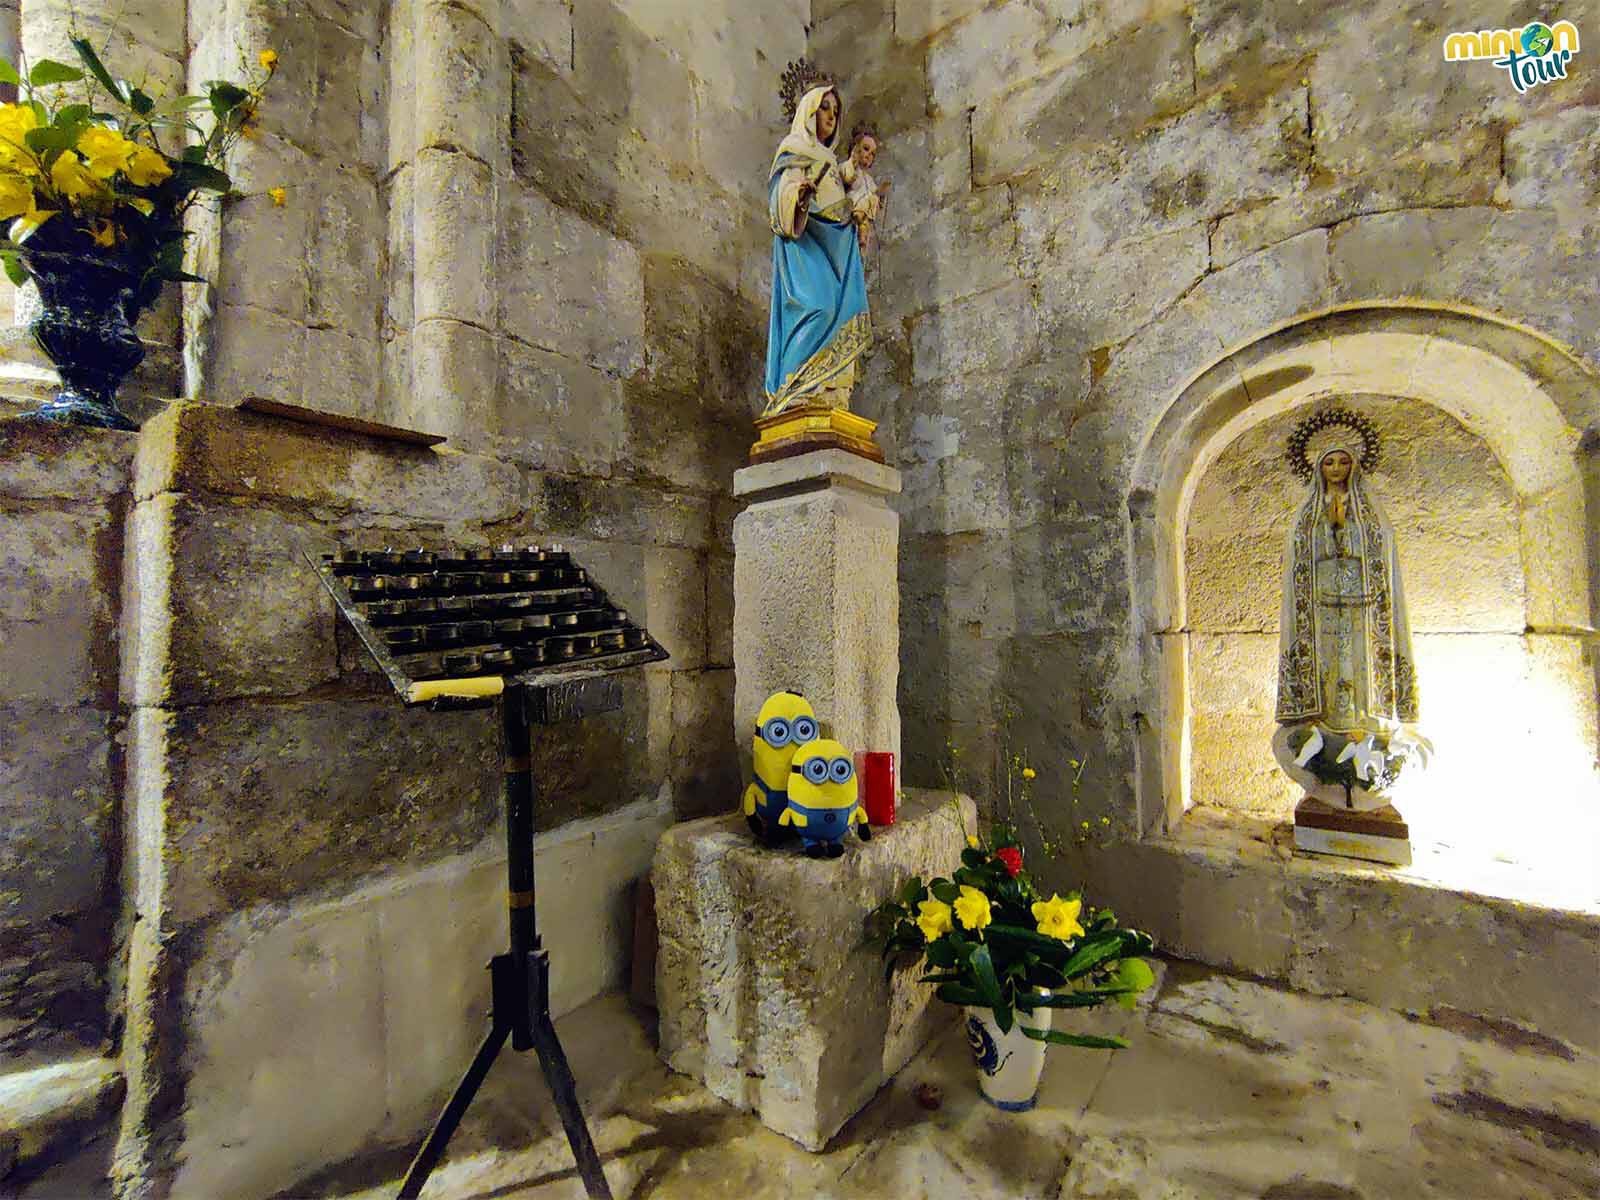 Estamos saludando a la Virgen de los Remedios en la Iglesia de San Paio de Diomondi